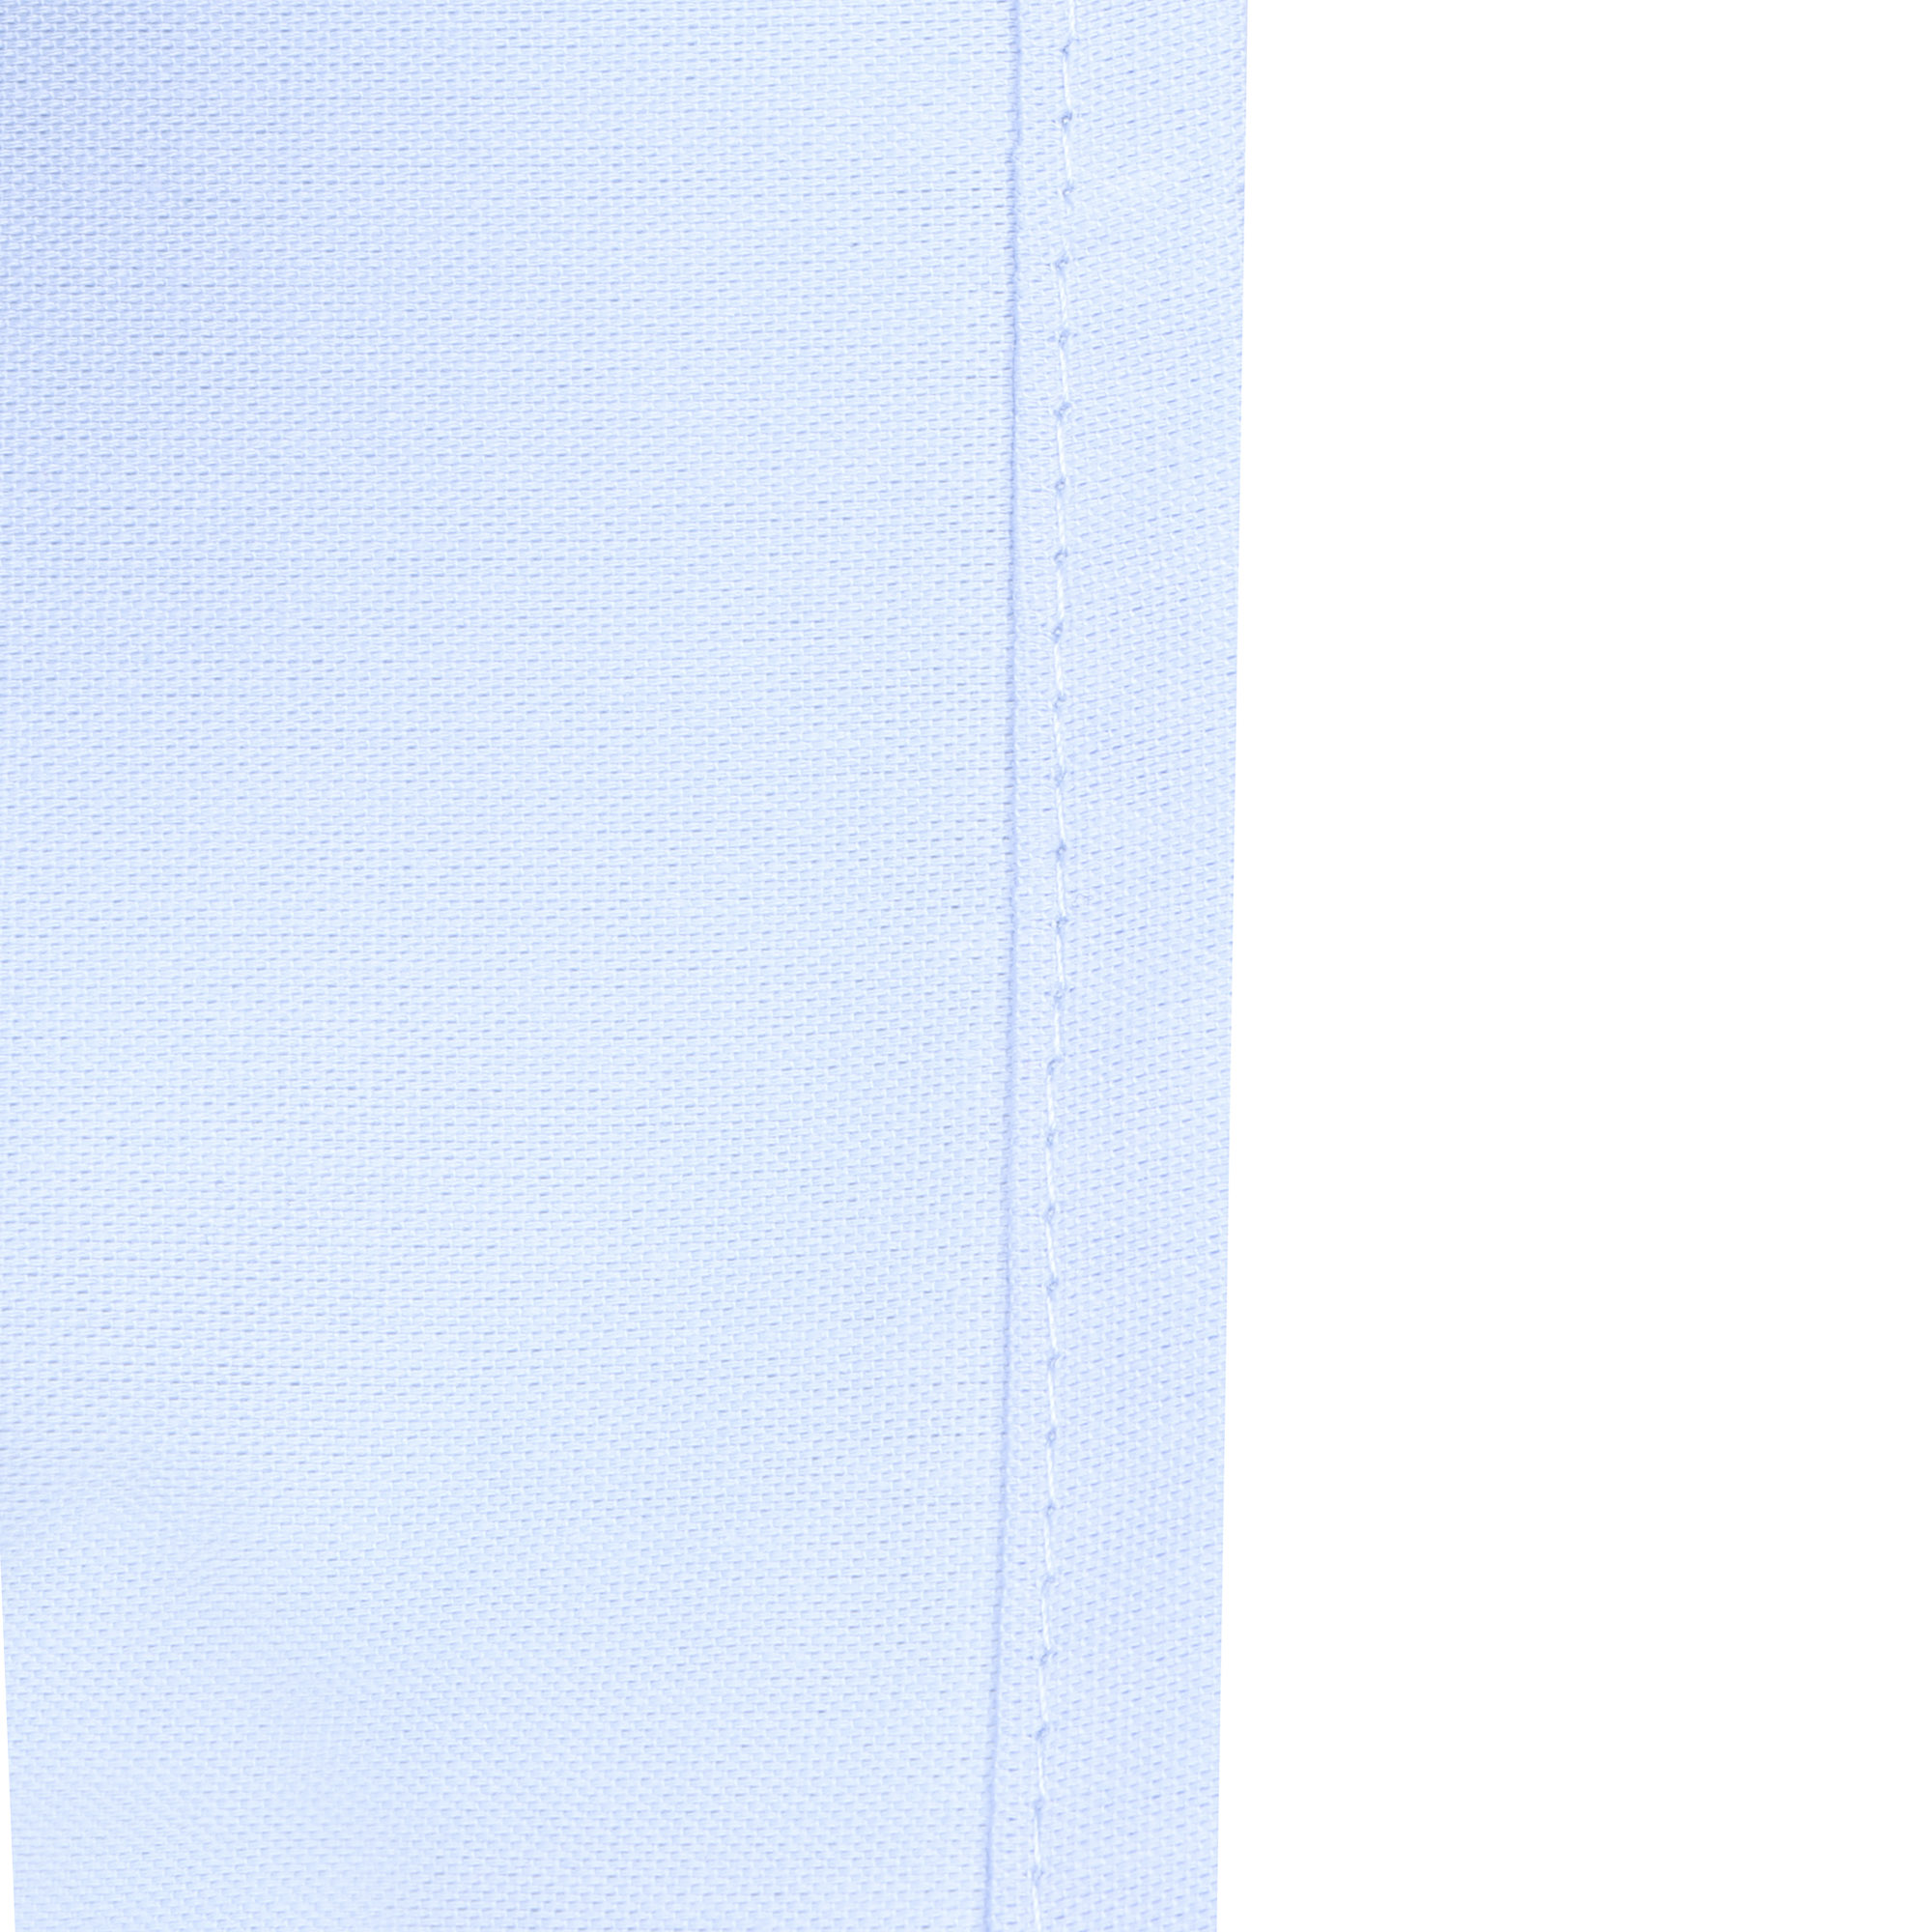 Сорочка для мальчиков КАРАМЕЛЛИ О14311 голубая 164, цвет голубой, размер 164 - фото 6